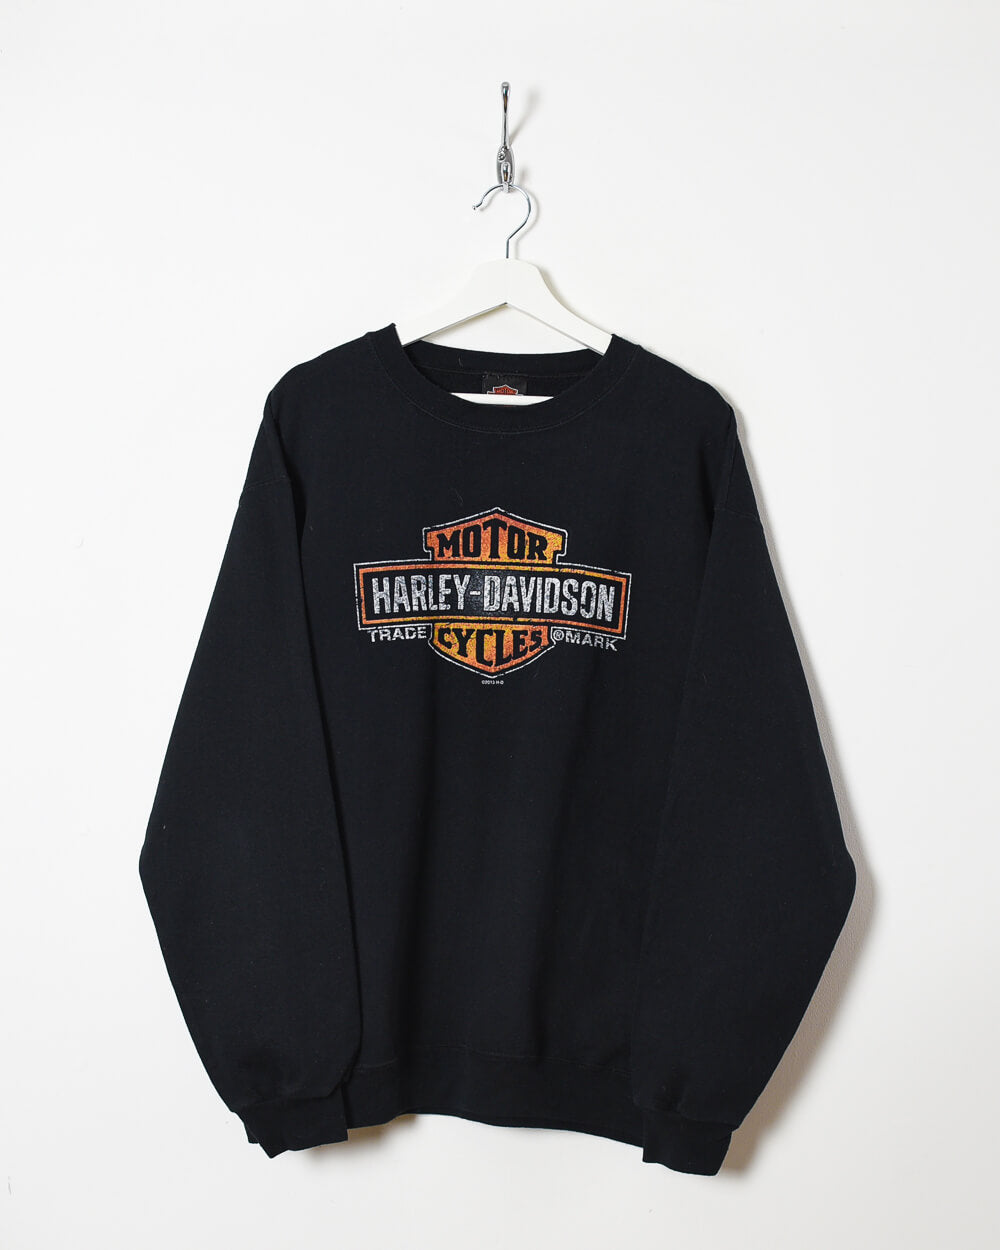 Black Harley Davidson Motorcycles Sweatshirt - Large